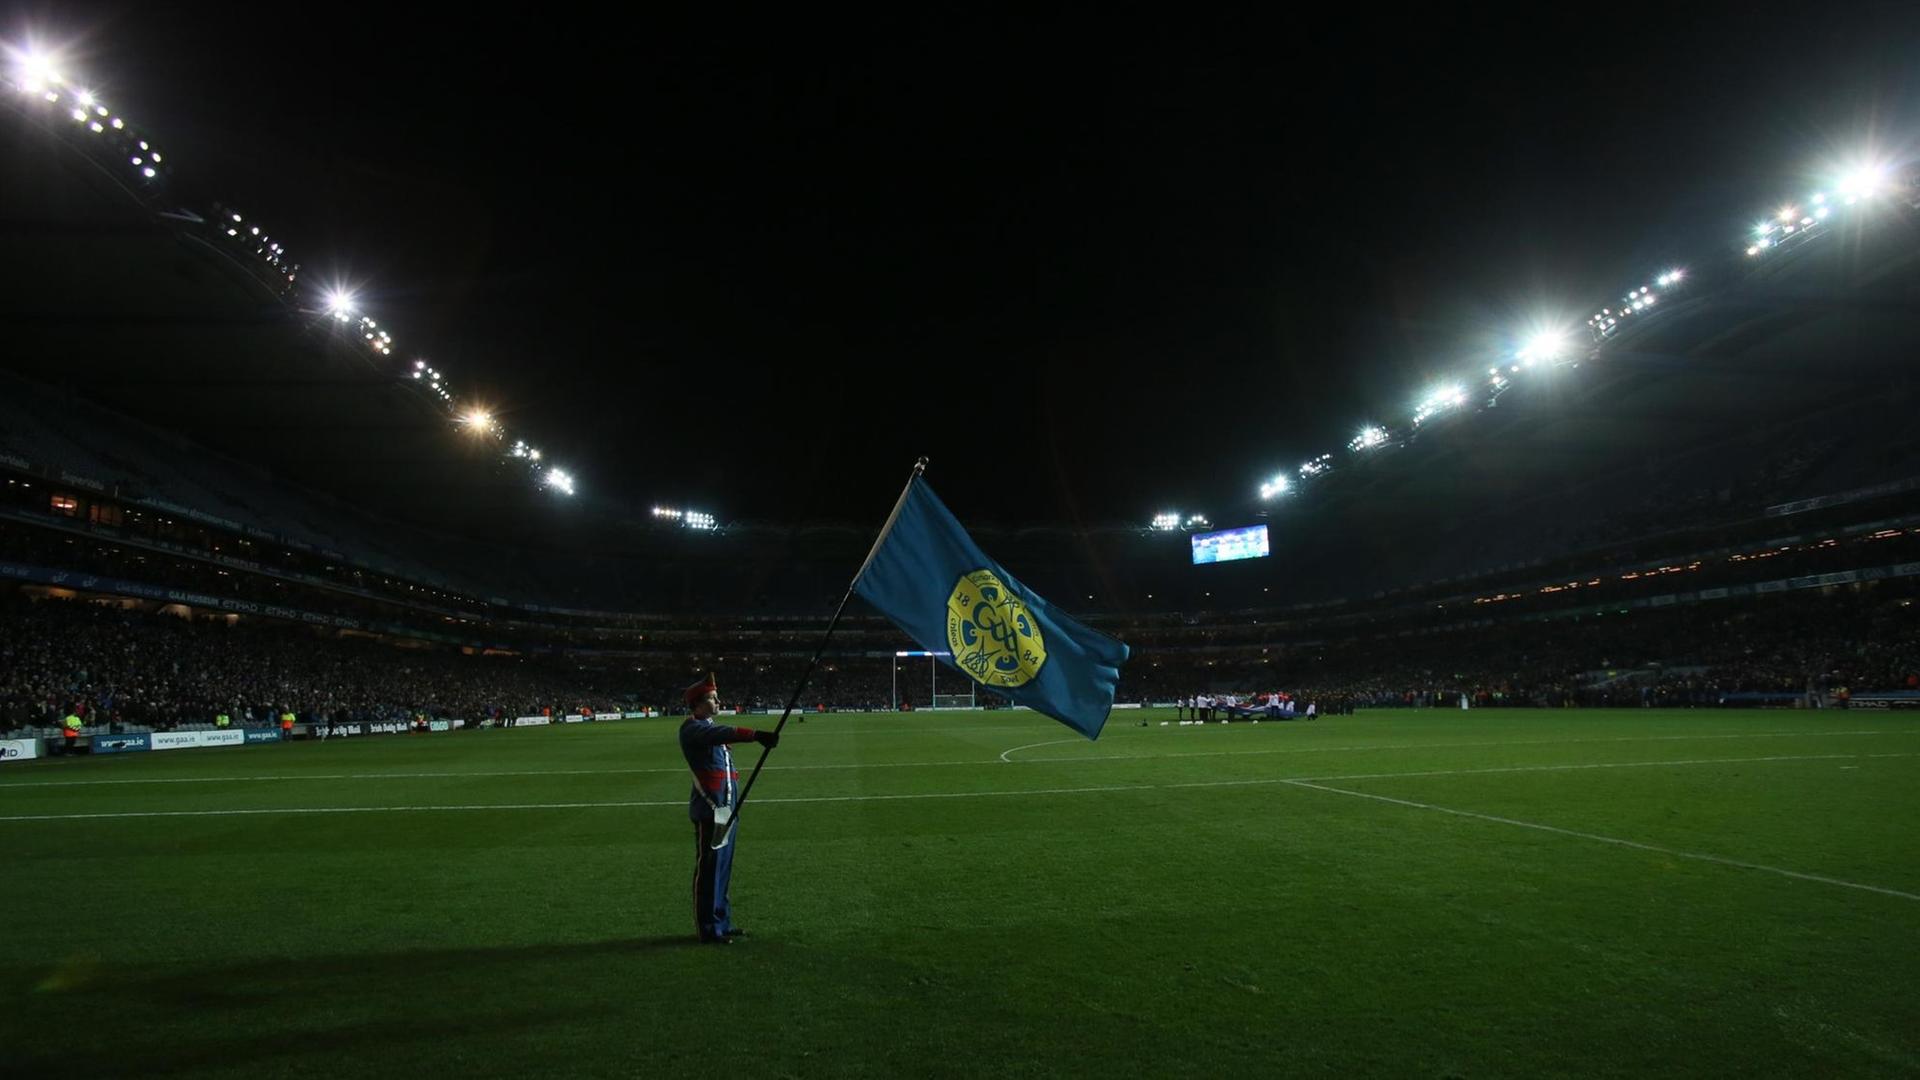 Eine Foto zeigt einen Mann in Uniform eine Flagge haltend auf leerem Rasen im mit Flutlicht beleuchteten Croke-Park-Stadion in Dublin.